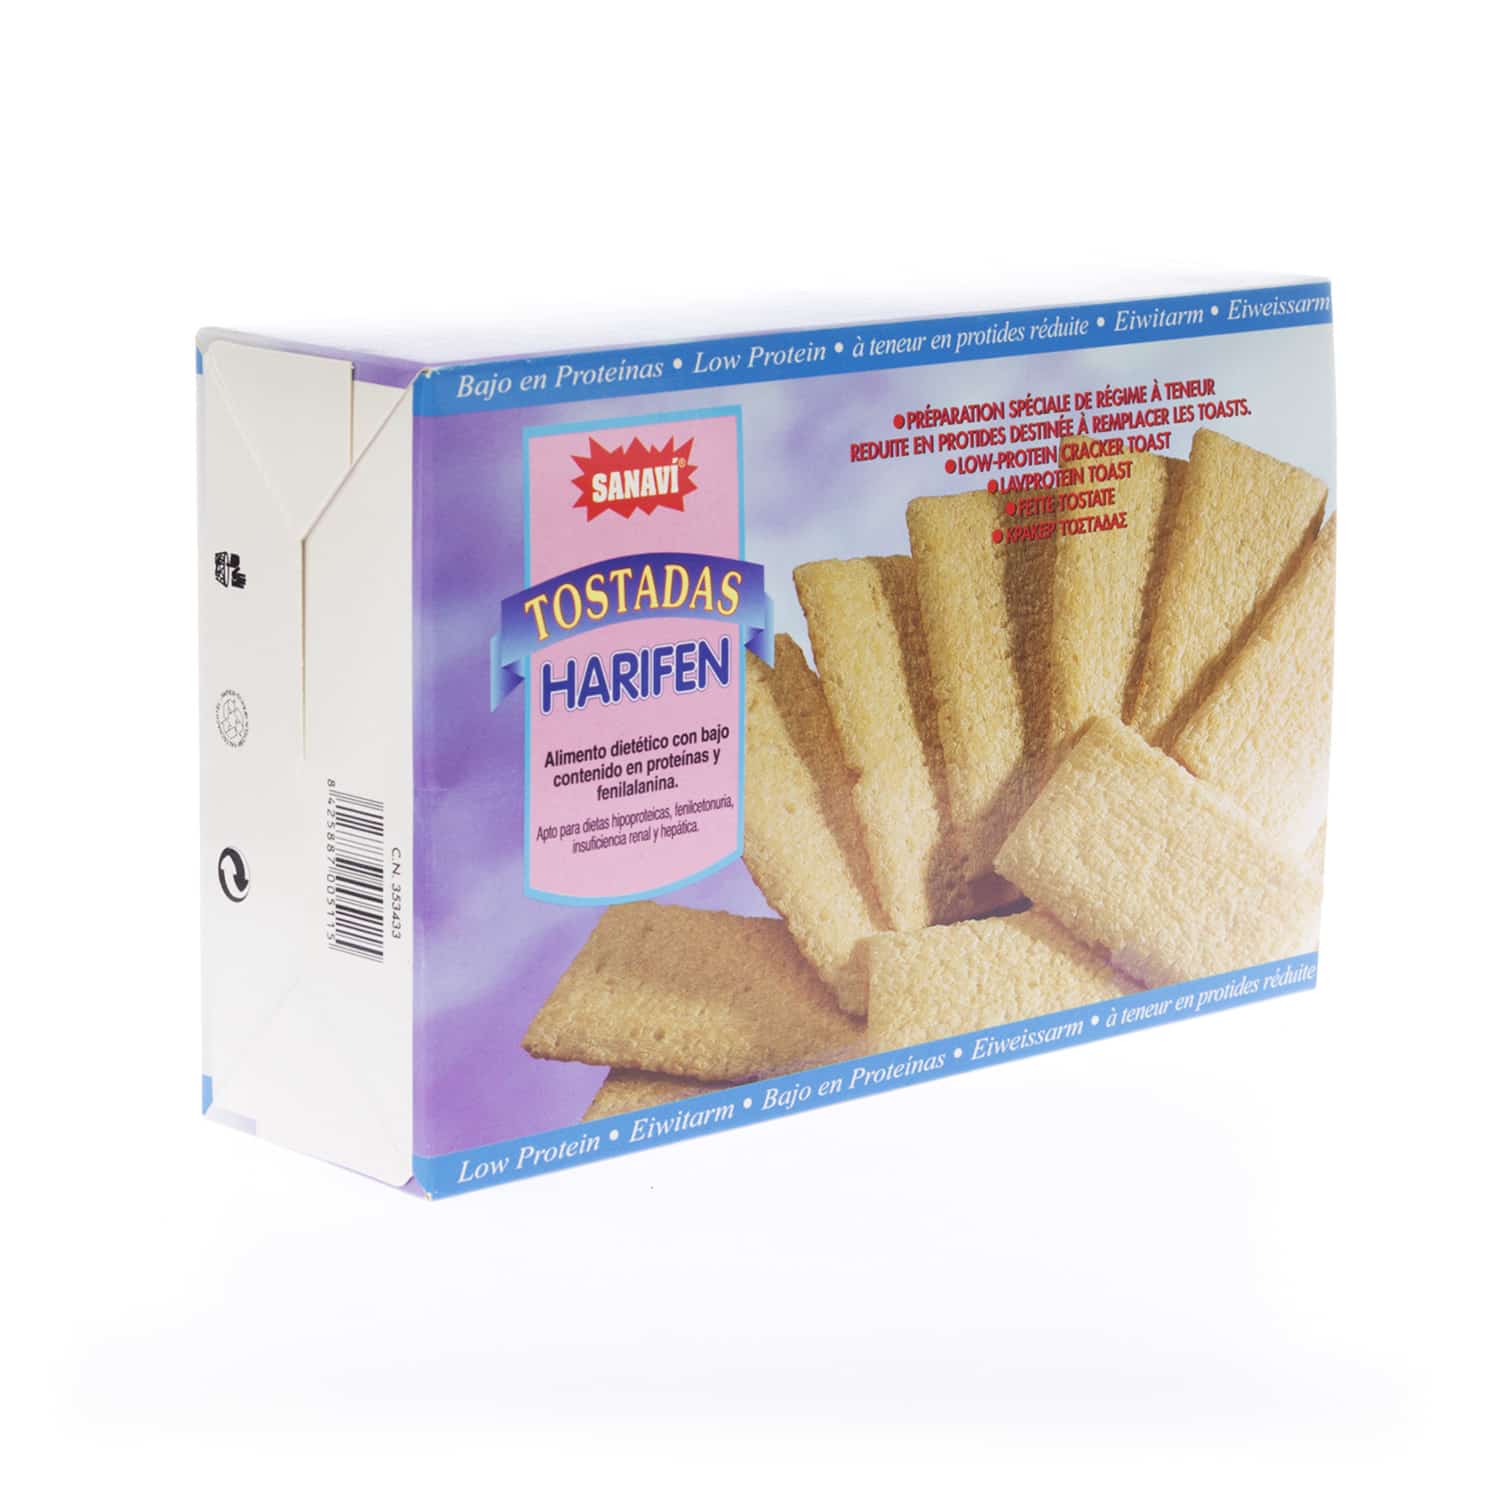 Sanavi Harifen Toast zonder Gluten